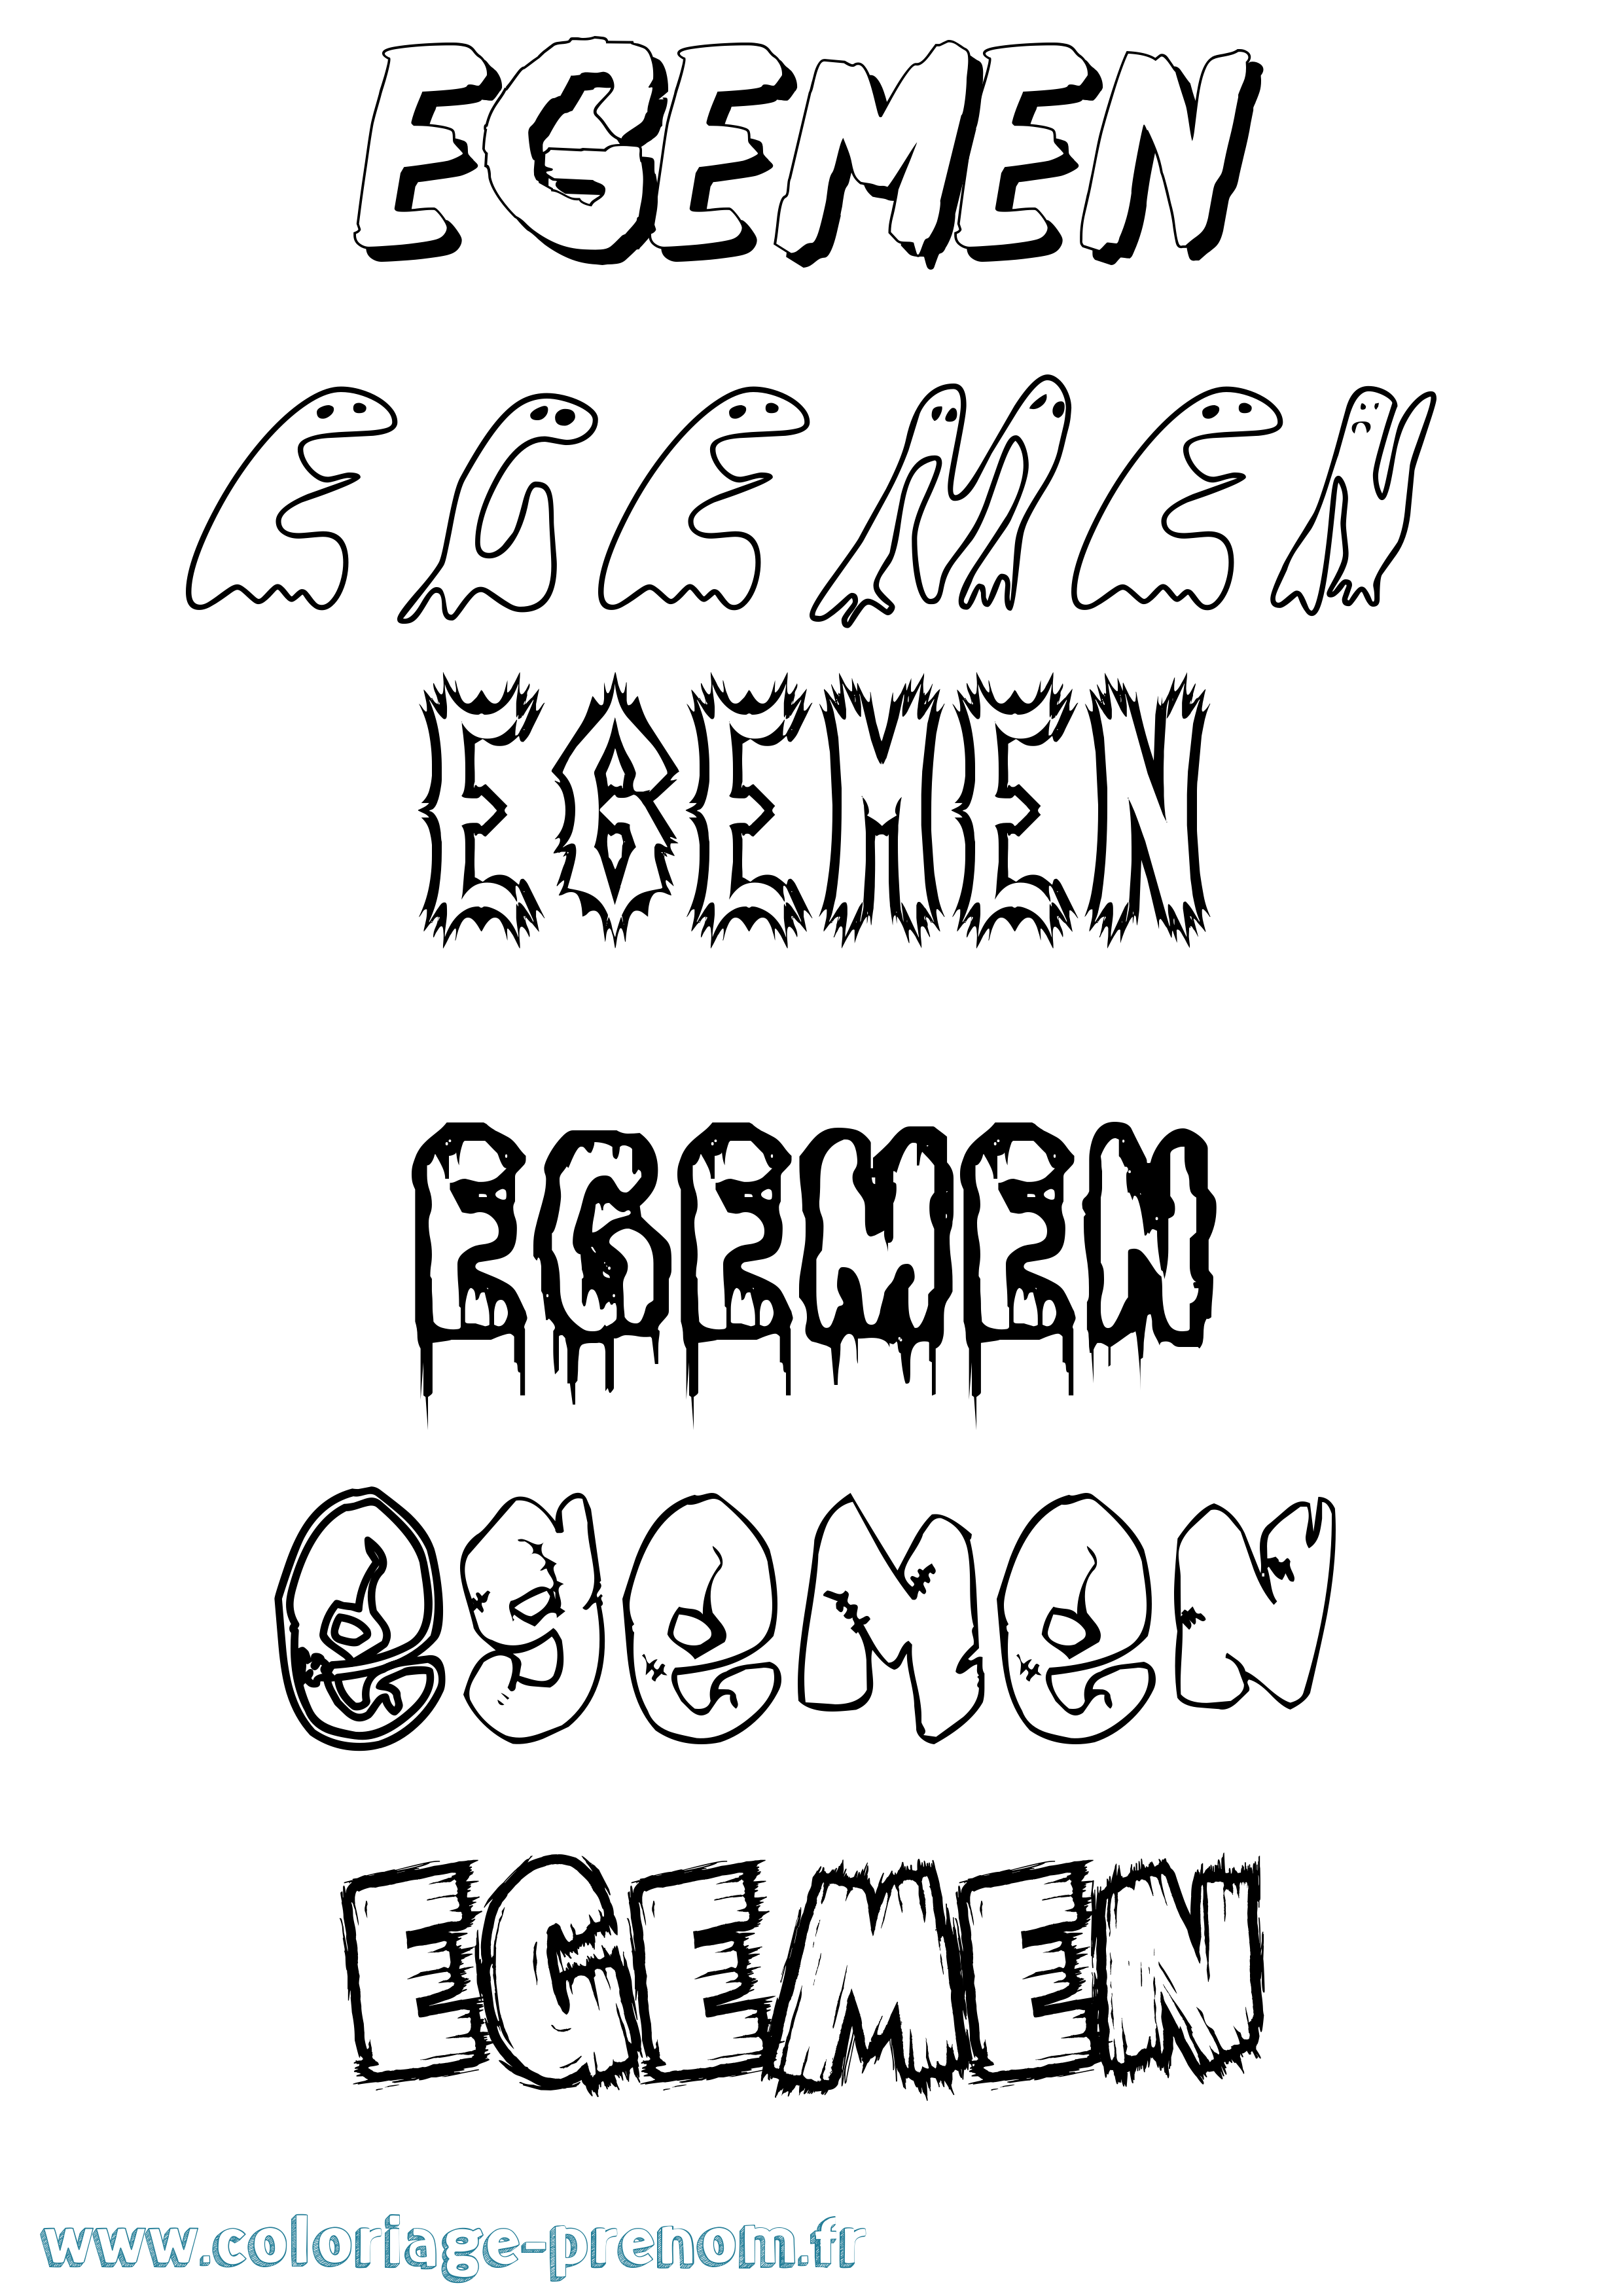 Coloriage prénom Egemen Frisson